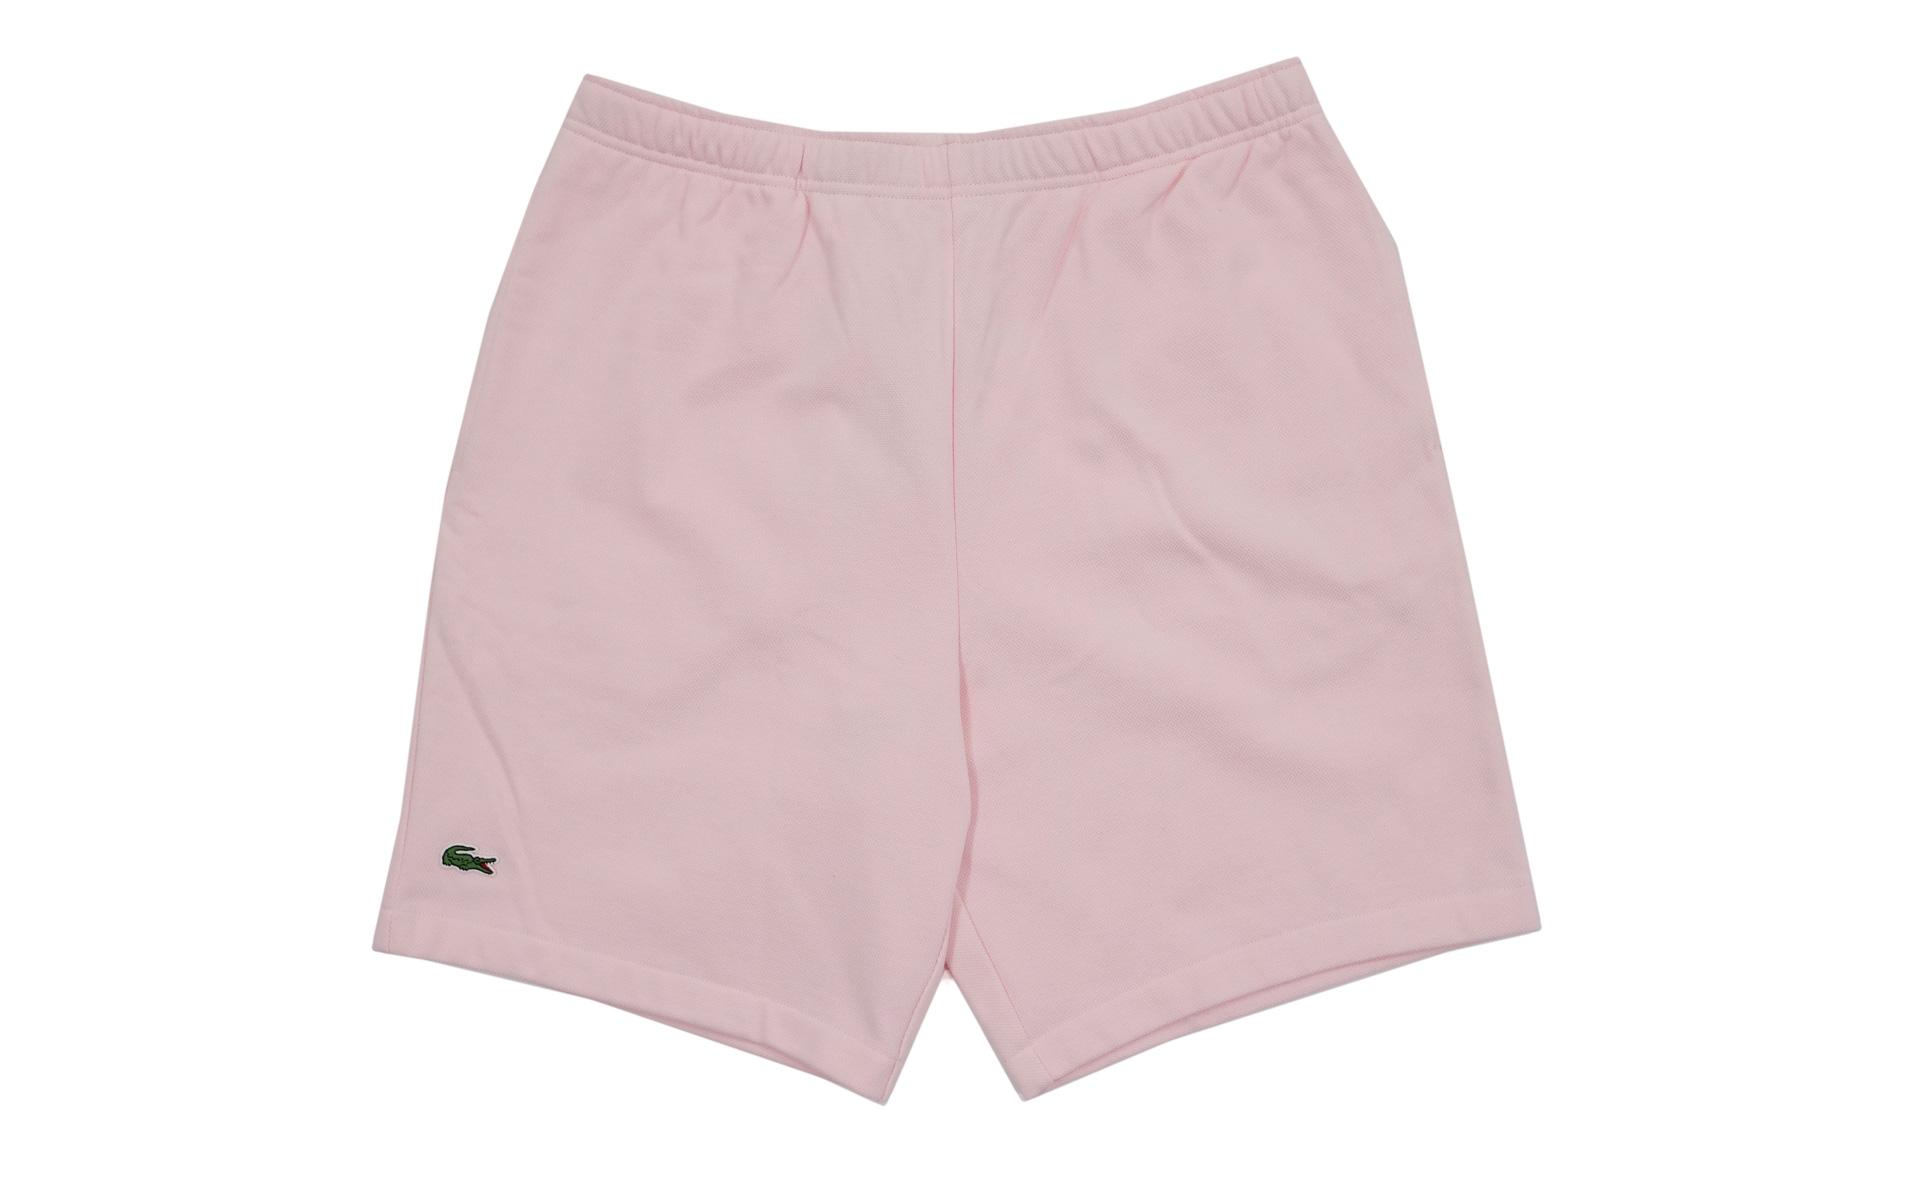 Lyst - Supreme Lacoste Pique Short Light Pink in Pink for Men